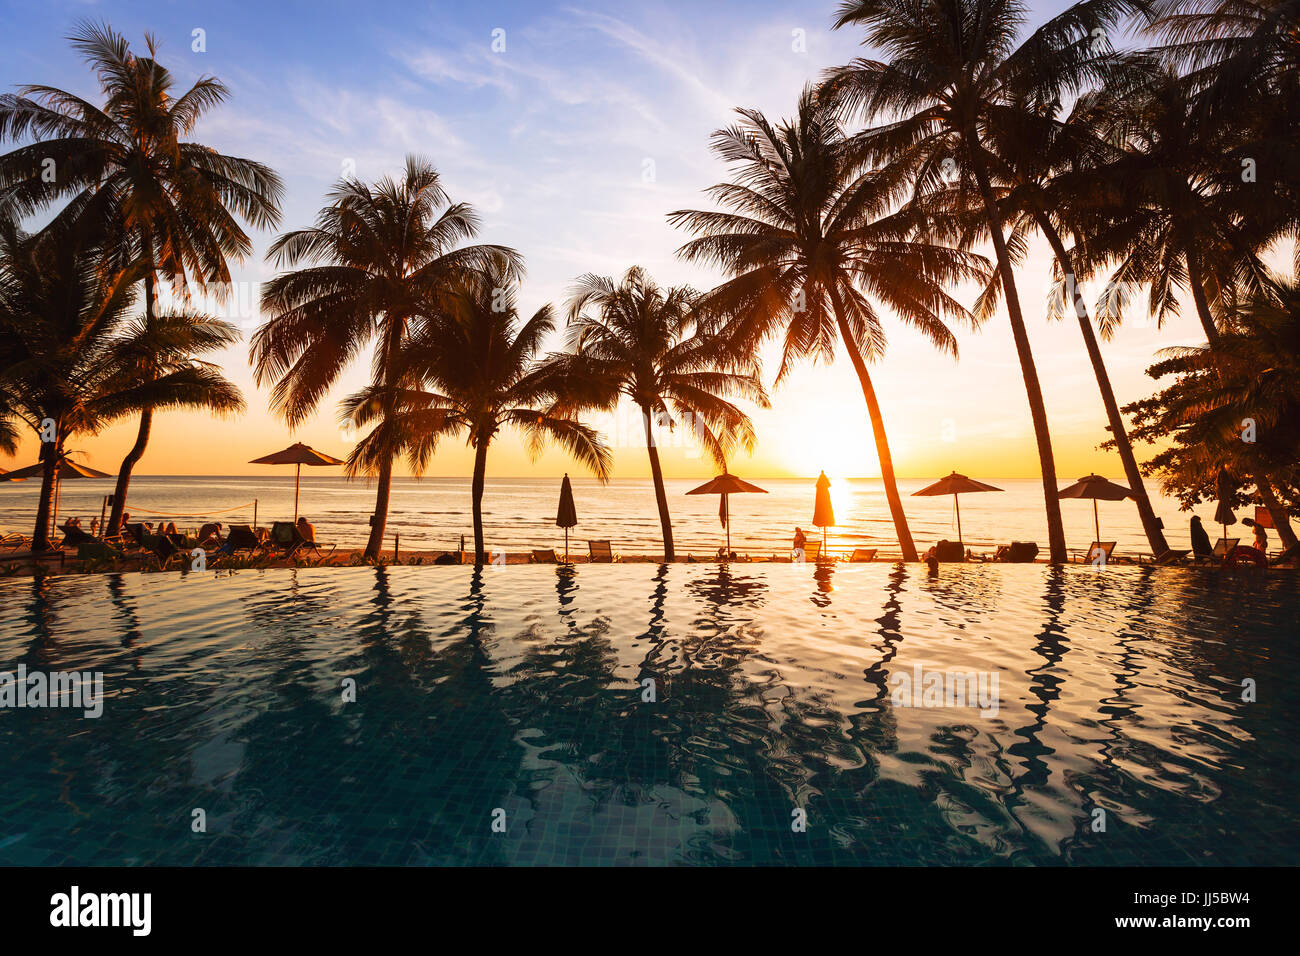 Sonnenuntergang am Strand, Urlaub Hintergrund, Reflexion von Silhouetten von Palmen im Swimmingpool des Hotels Stockfoto